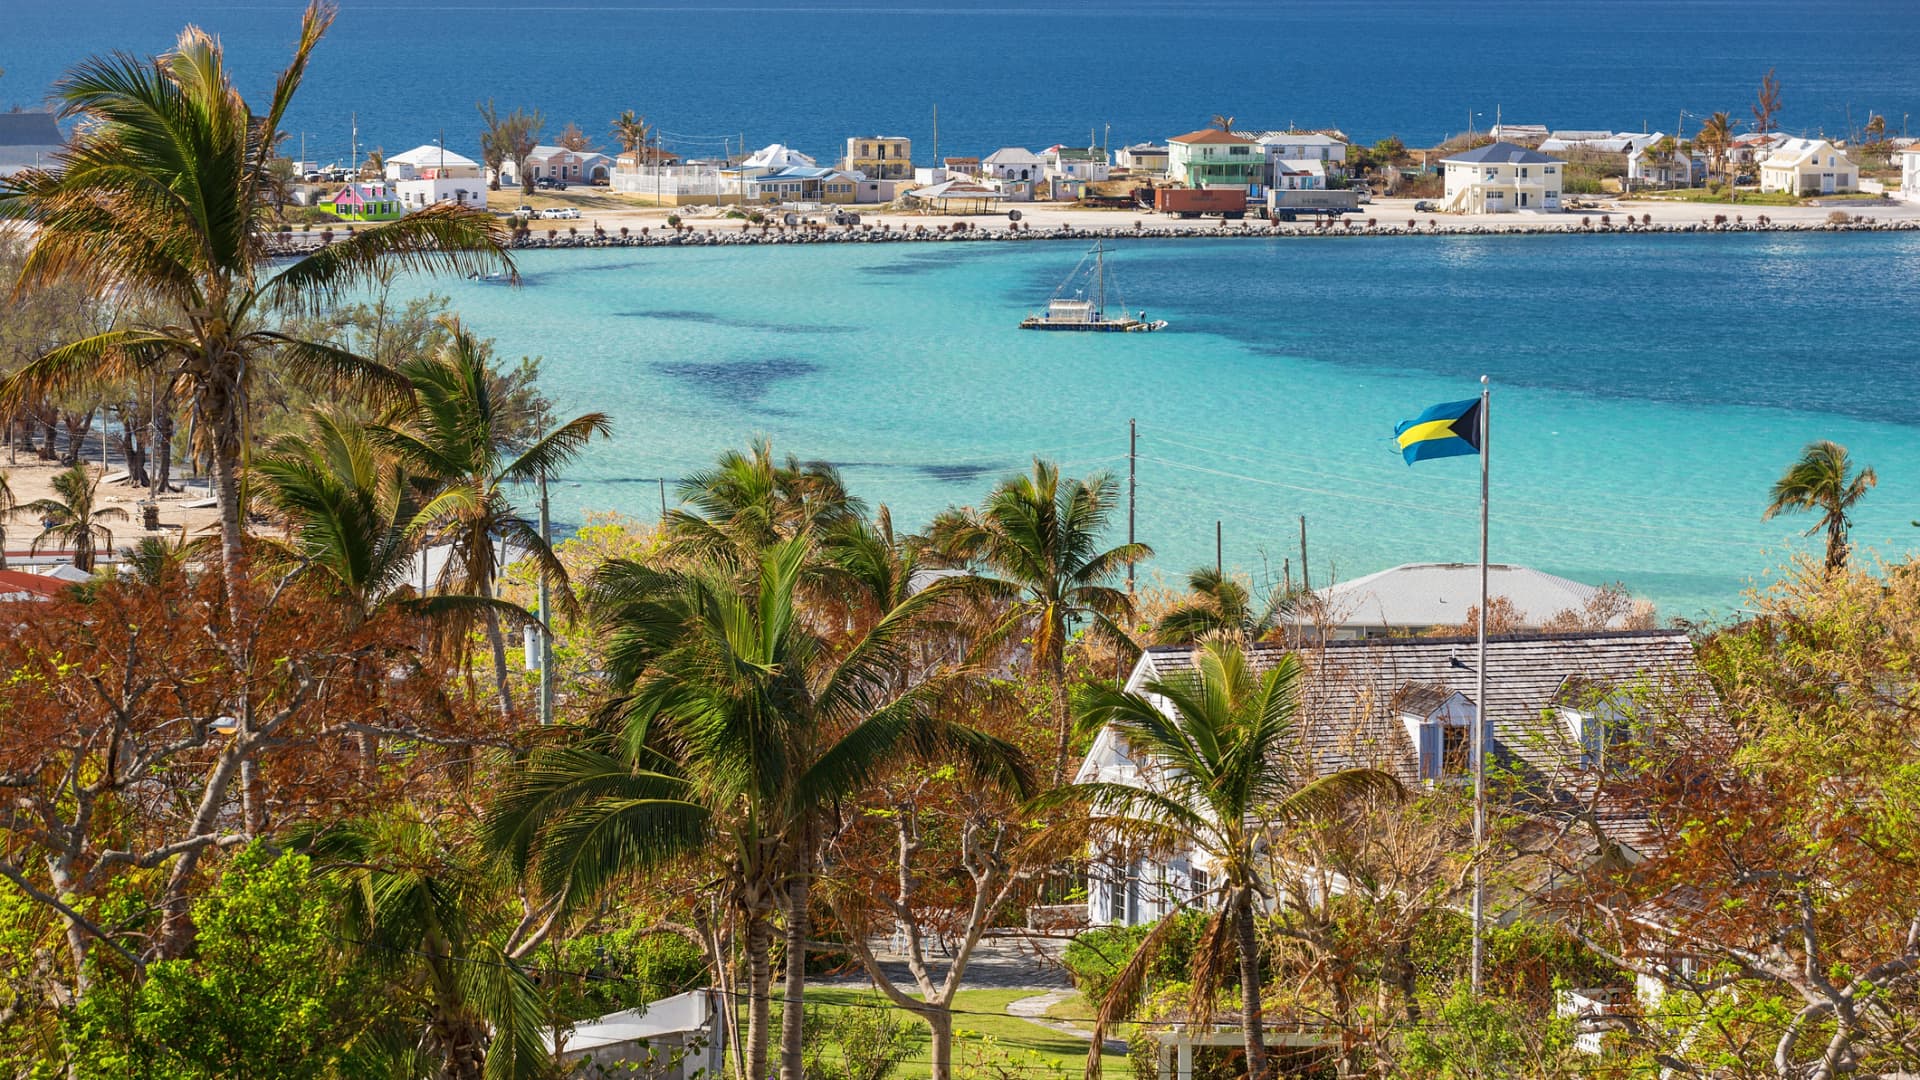 Les dirigeants de FTX ont dépensé 256 millions de dollars dans l’immobilier aux Bahamas